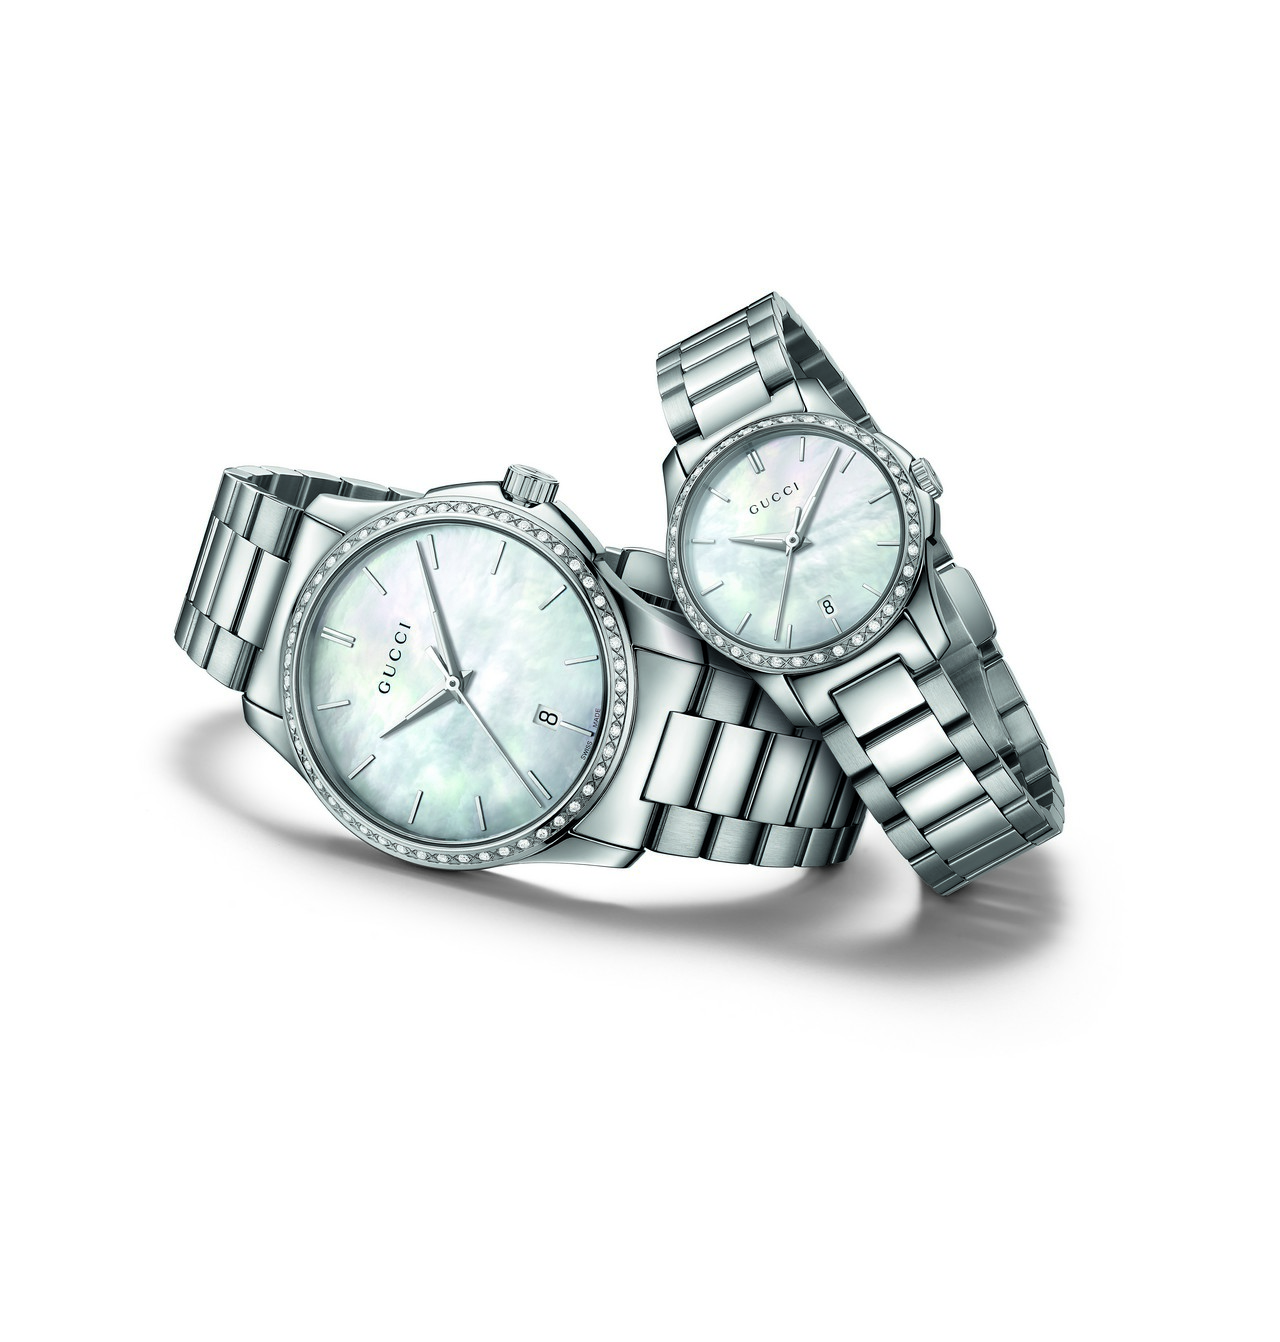 Gucci Timepieces & Jewelry: i nuovi orologi Gucci Handmaster e la collezione G-Timeless per il Natale 2015